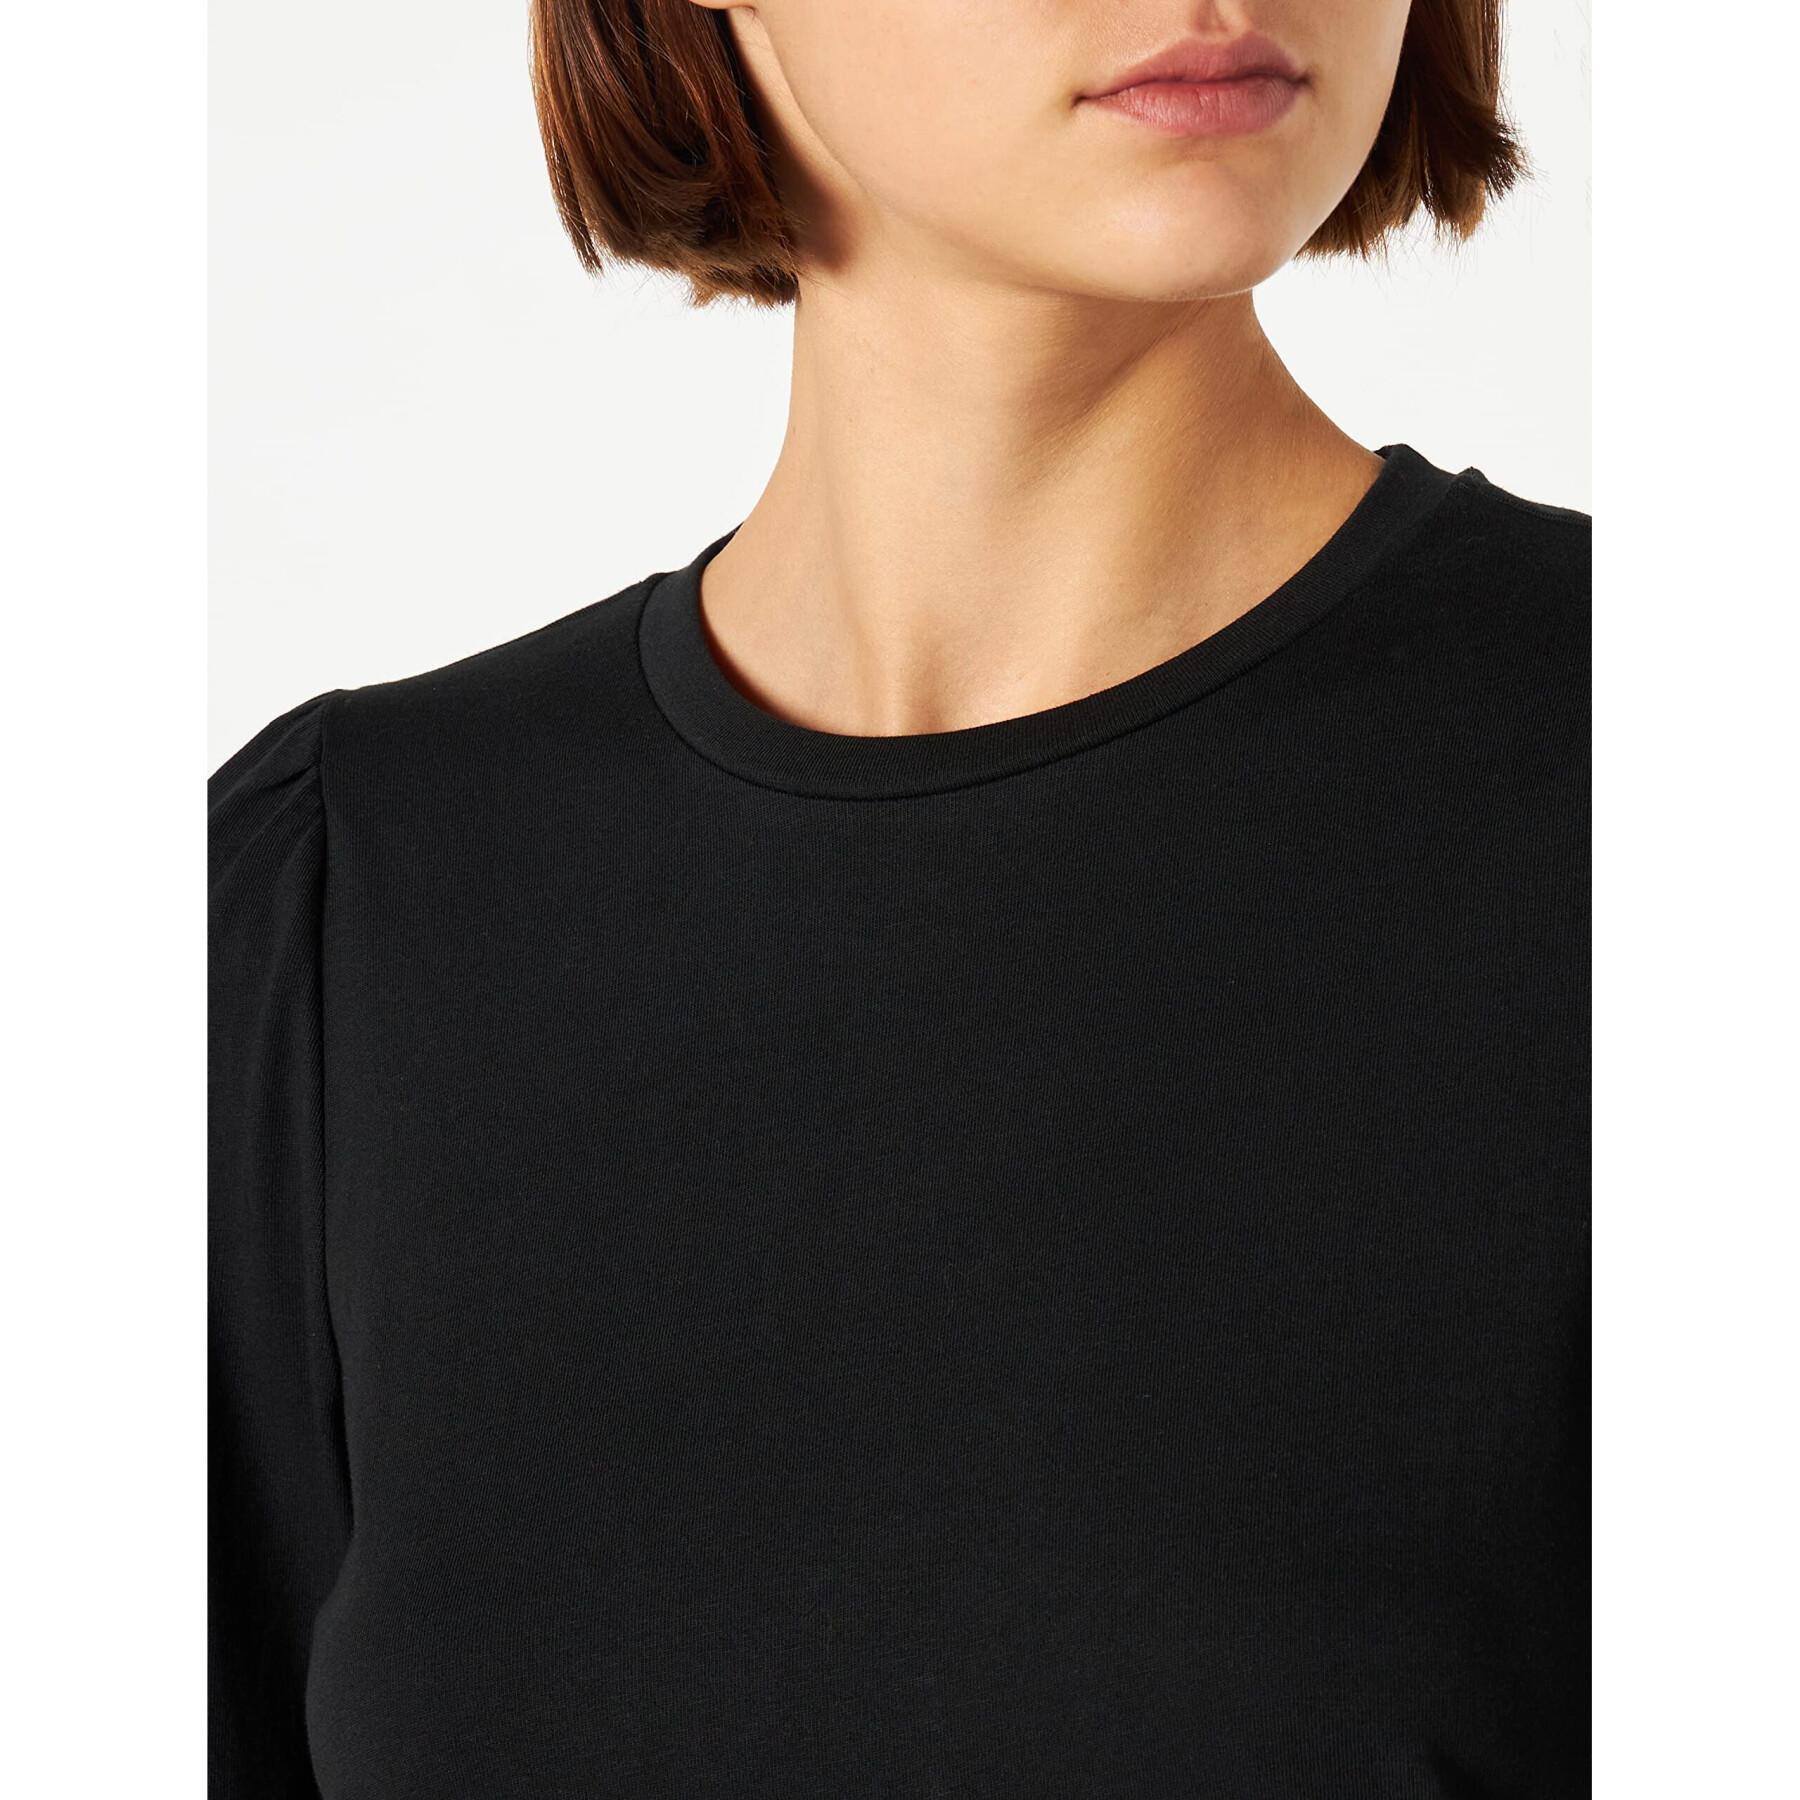 Women's long-sleeved t-shirt with o-neck Vero Moda Kerry Vma